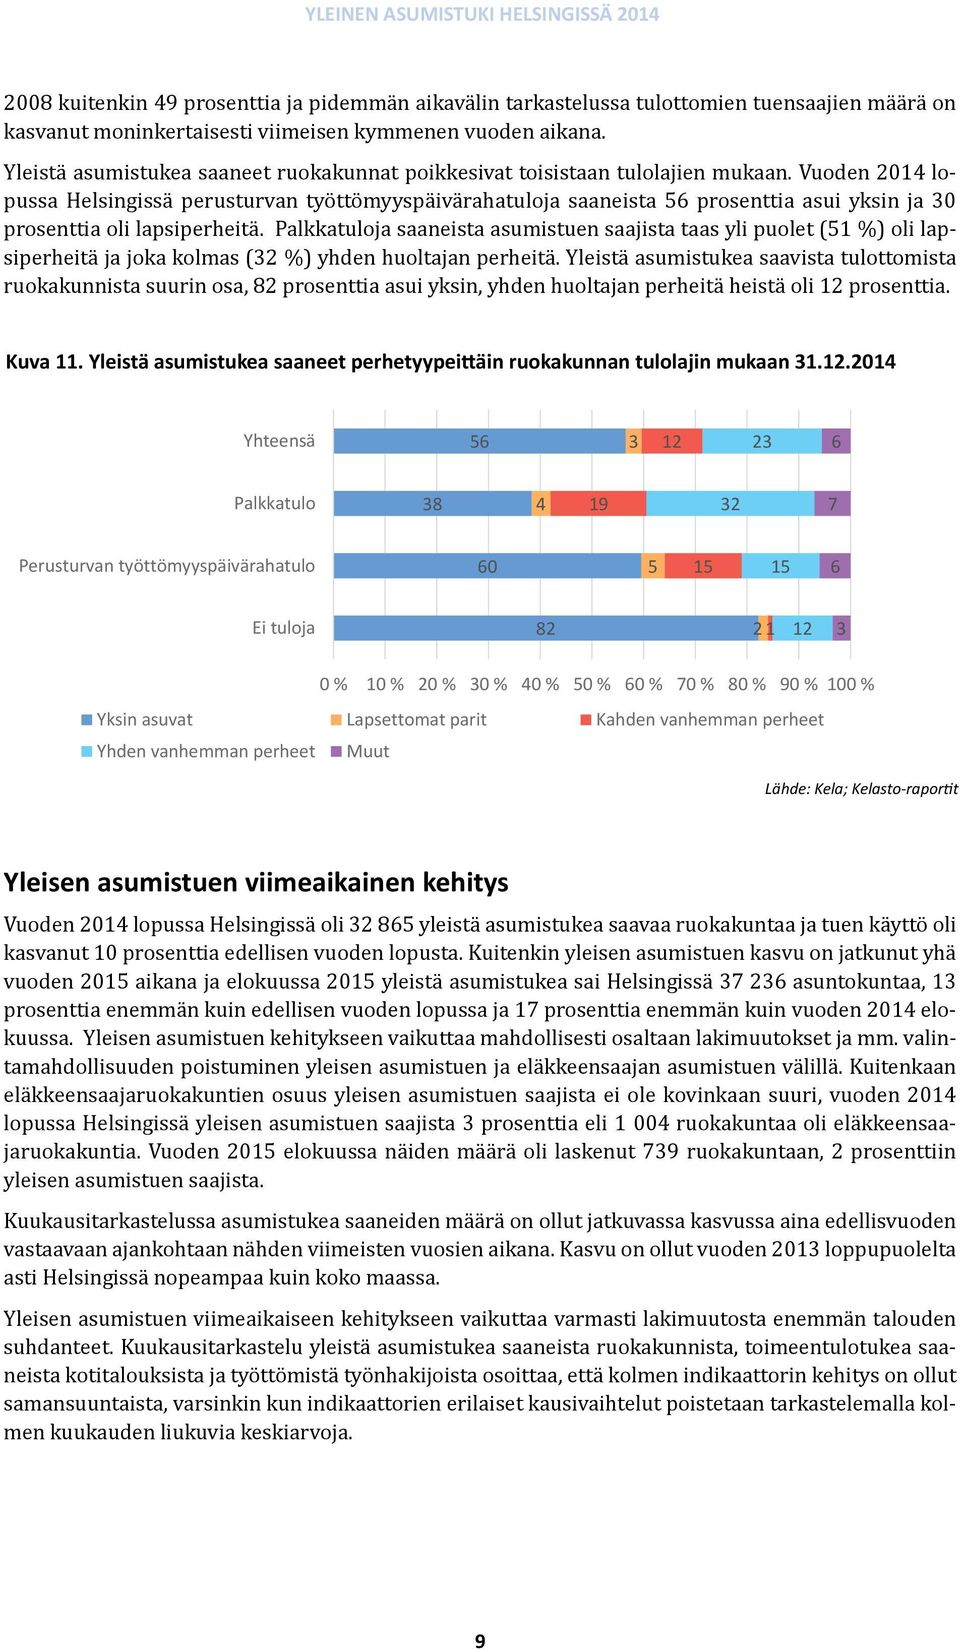 Vuoden 1 lopussa Helsingissä perusturvan työttömyyspäivärahatuloja saaneista prosenttia asui yksin ja prosenttia oli lapsiperheitä.